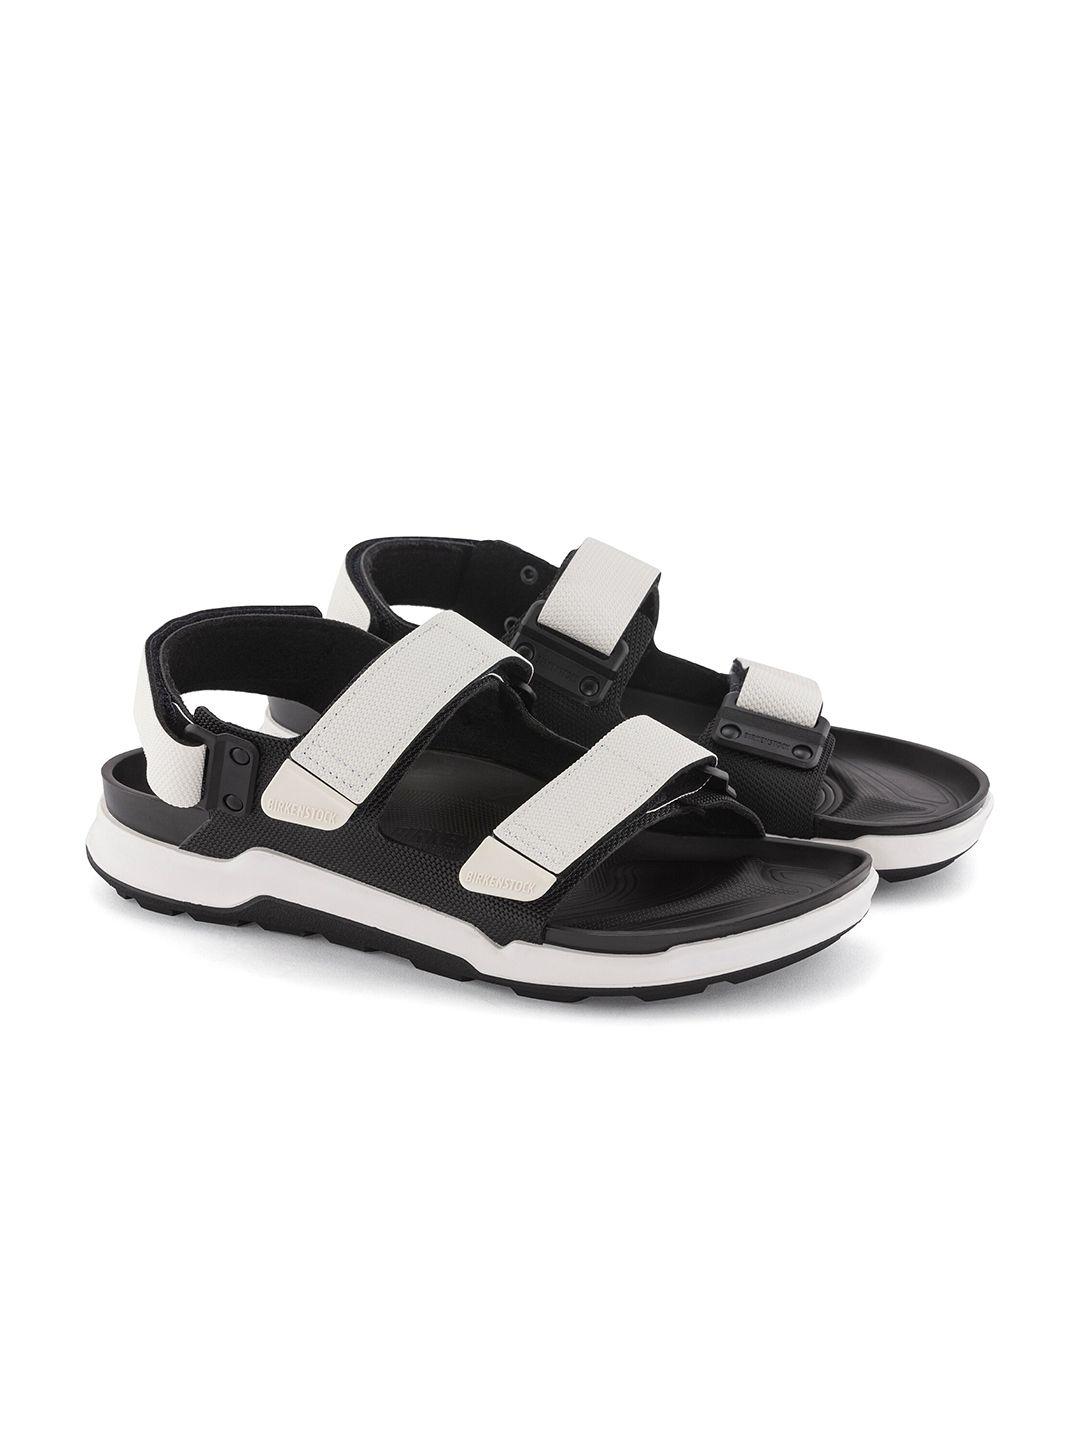 birkenstock men tatacoa regular width comfort sandals